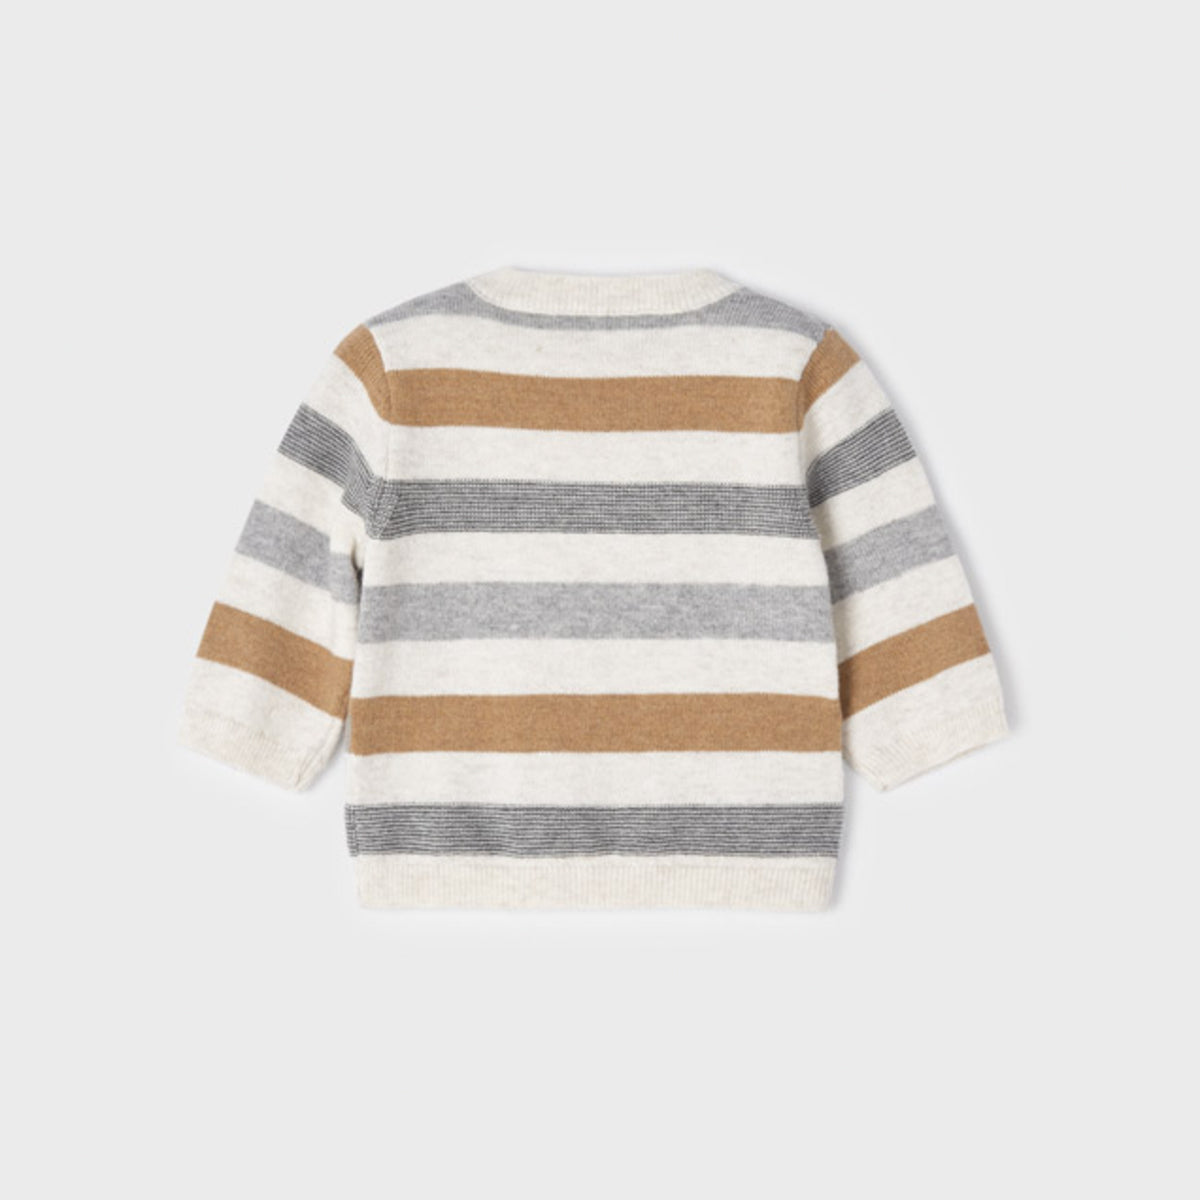 Caramel Stripe Jersey Knit Sweater